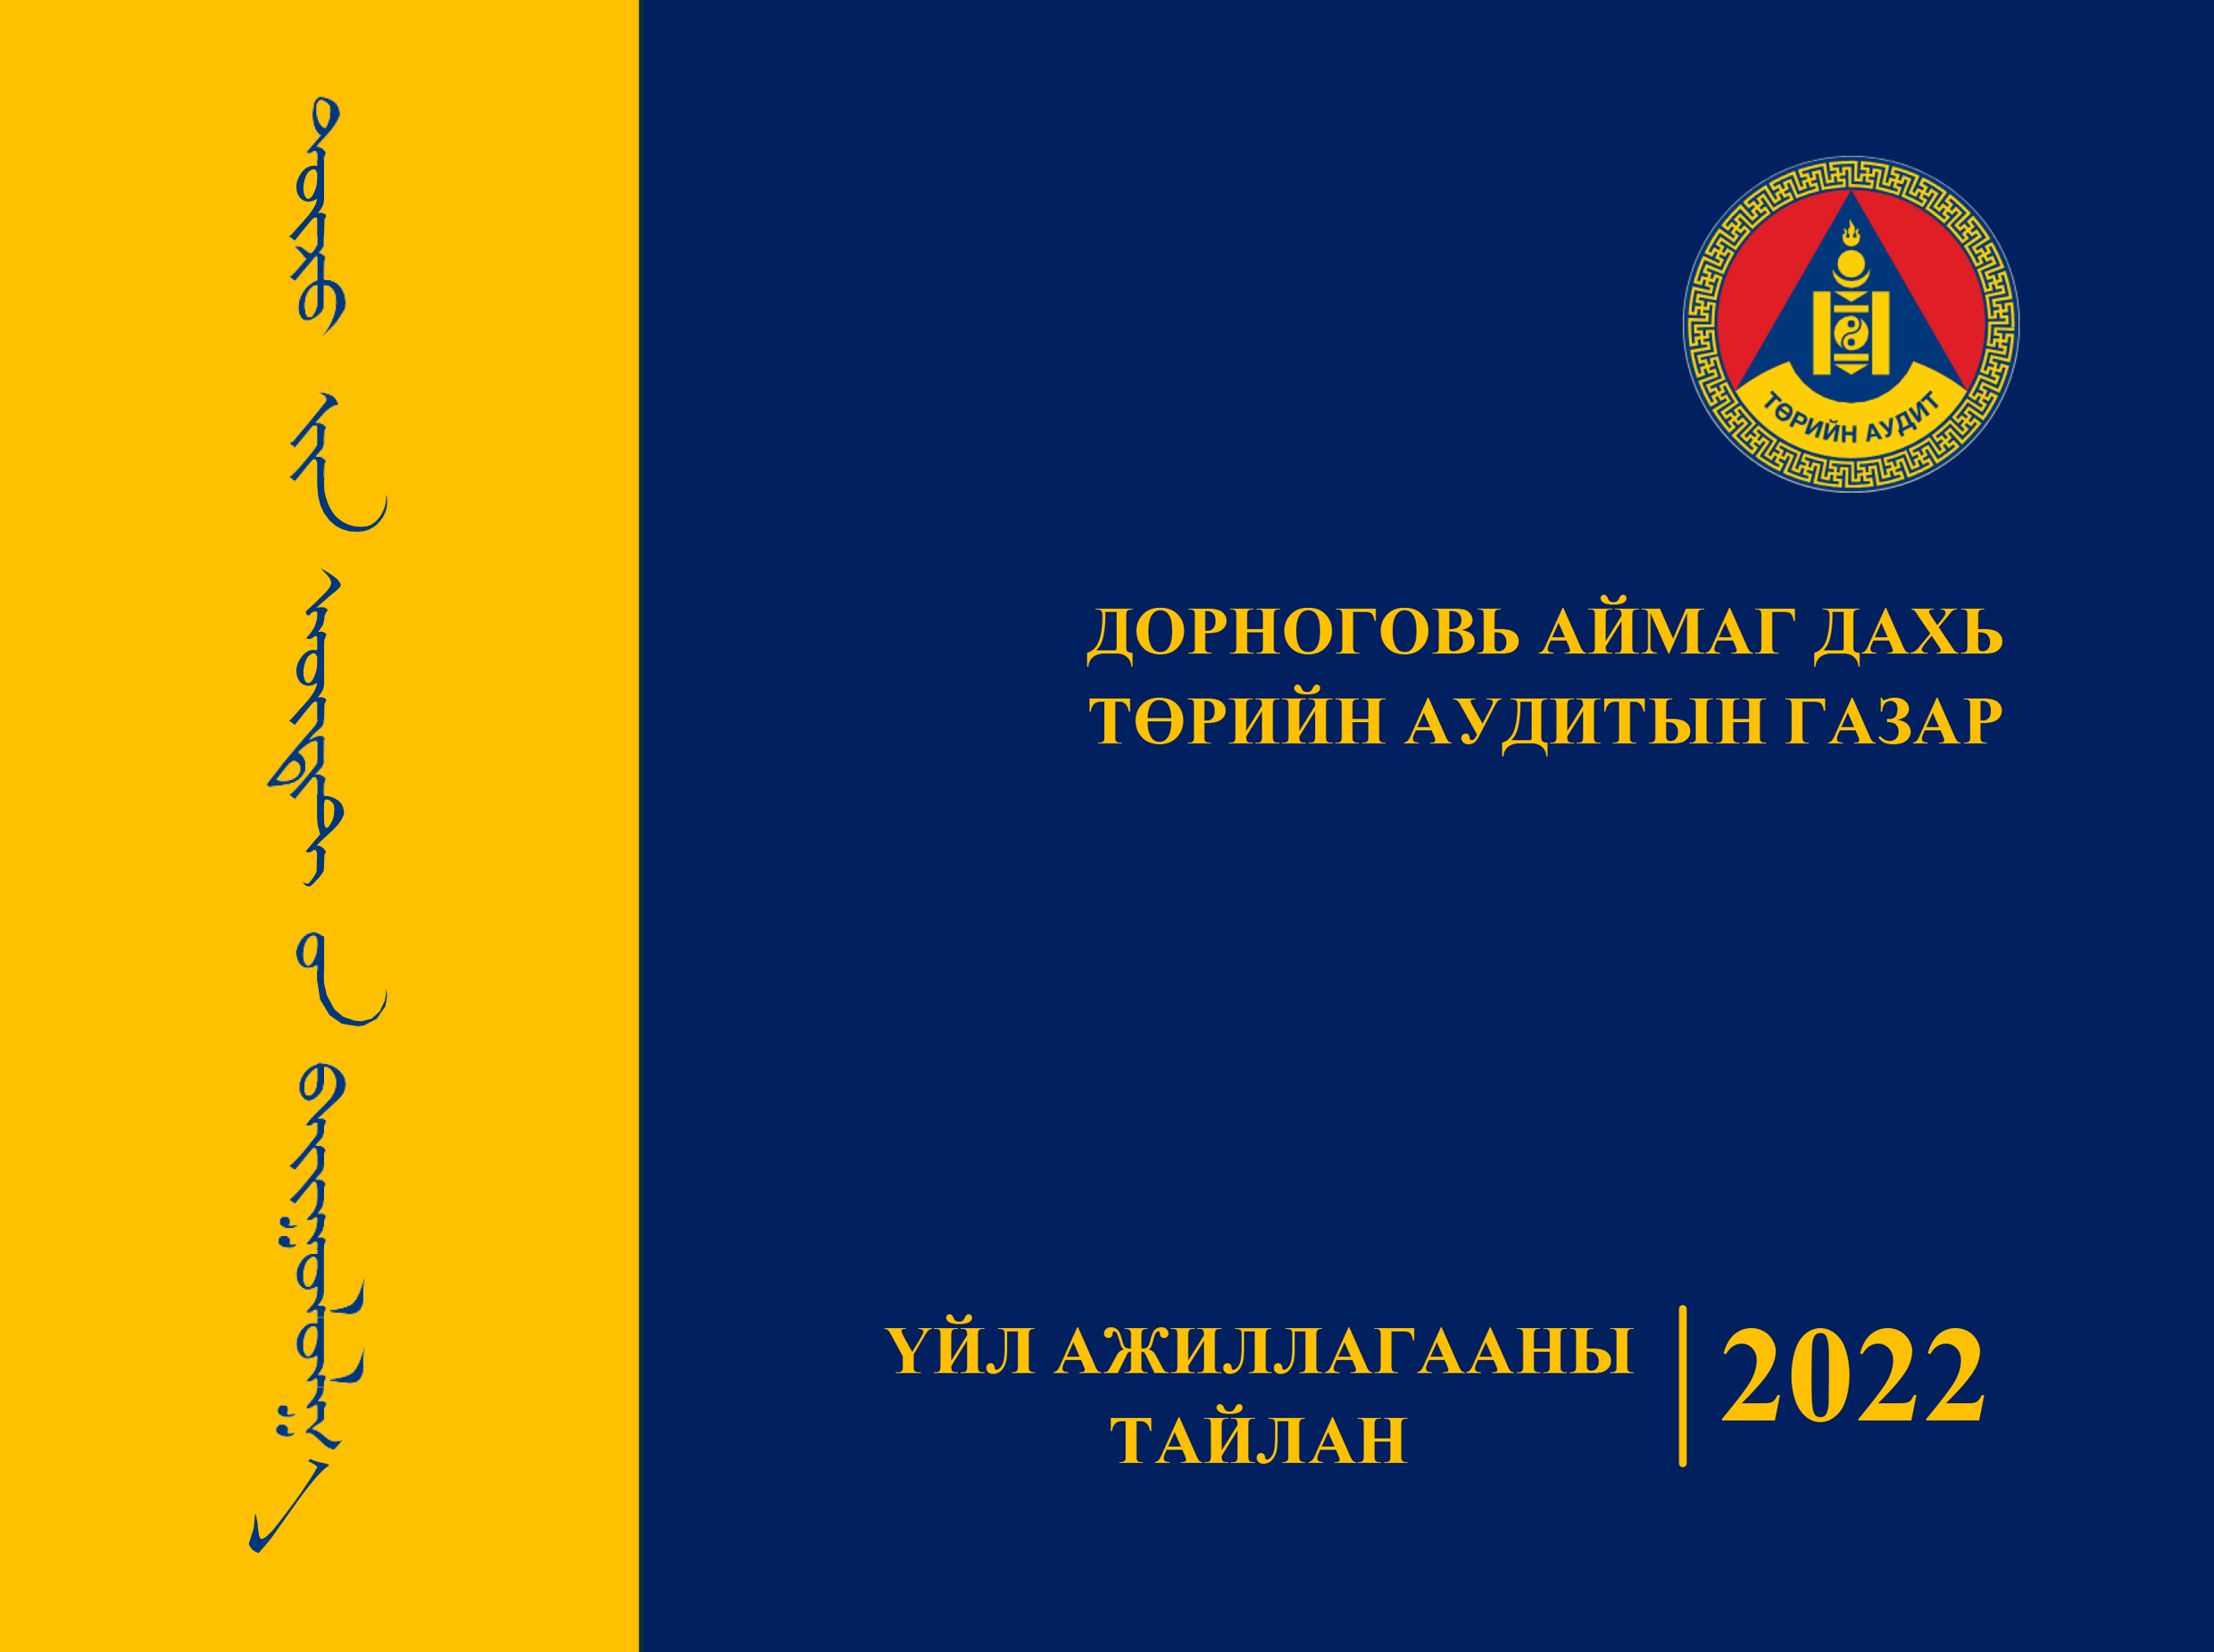 Дорноговь ТАГ – 2022 оны Үйл ажиллагааны тайлан